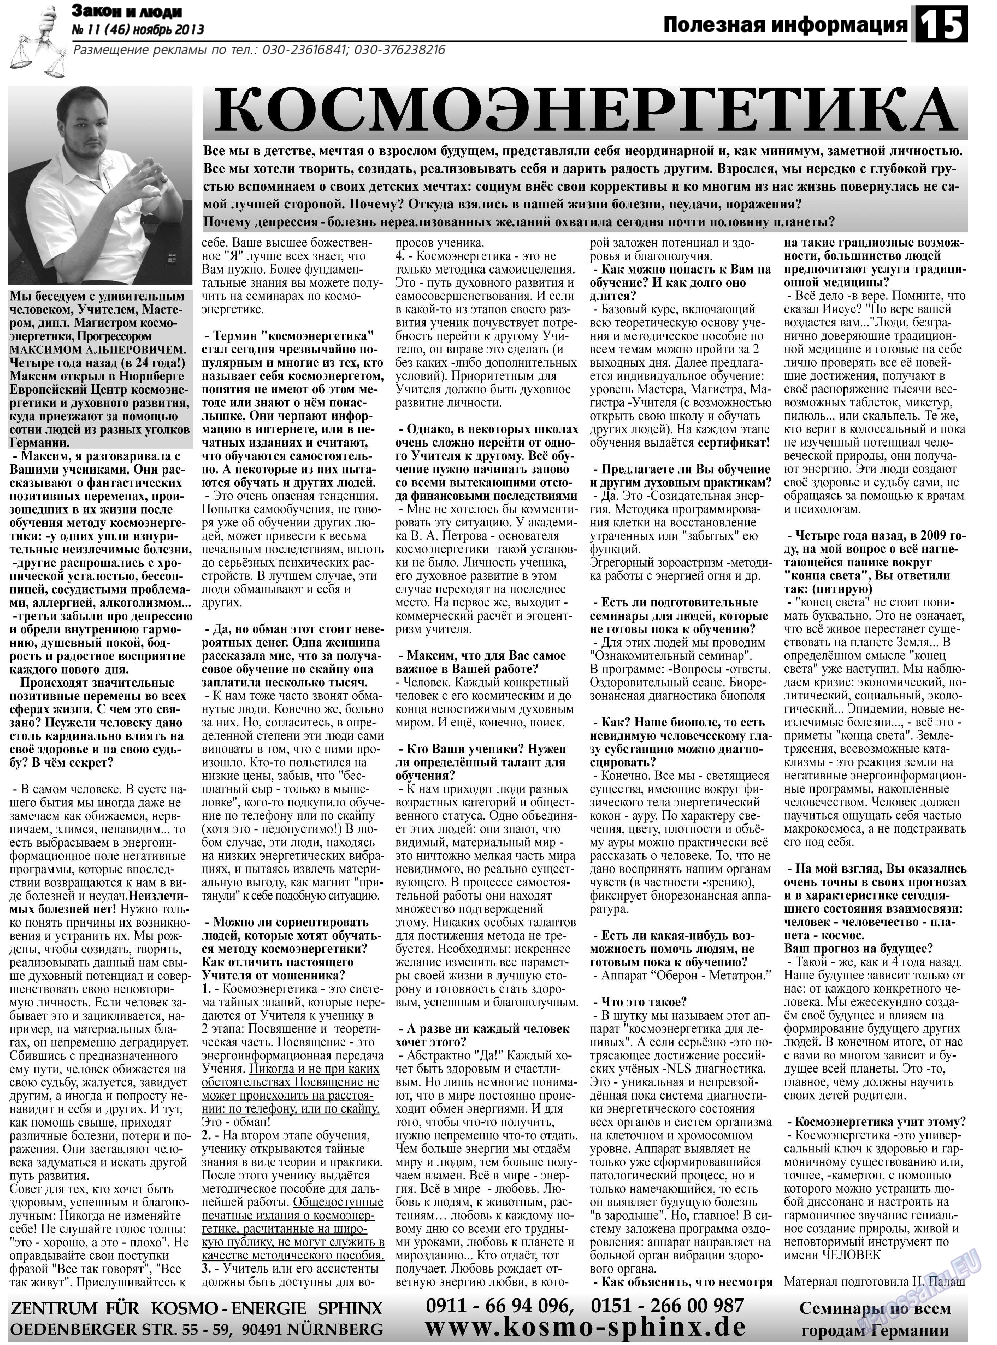 Закон и люди, газета. 2013 №11 стр.15